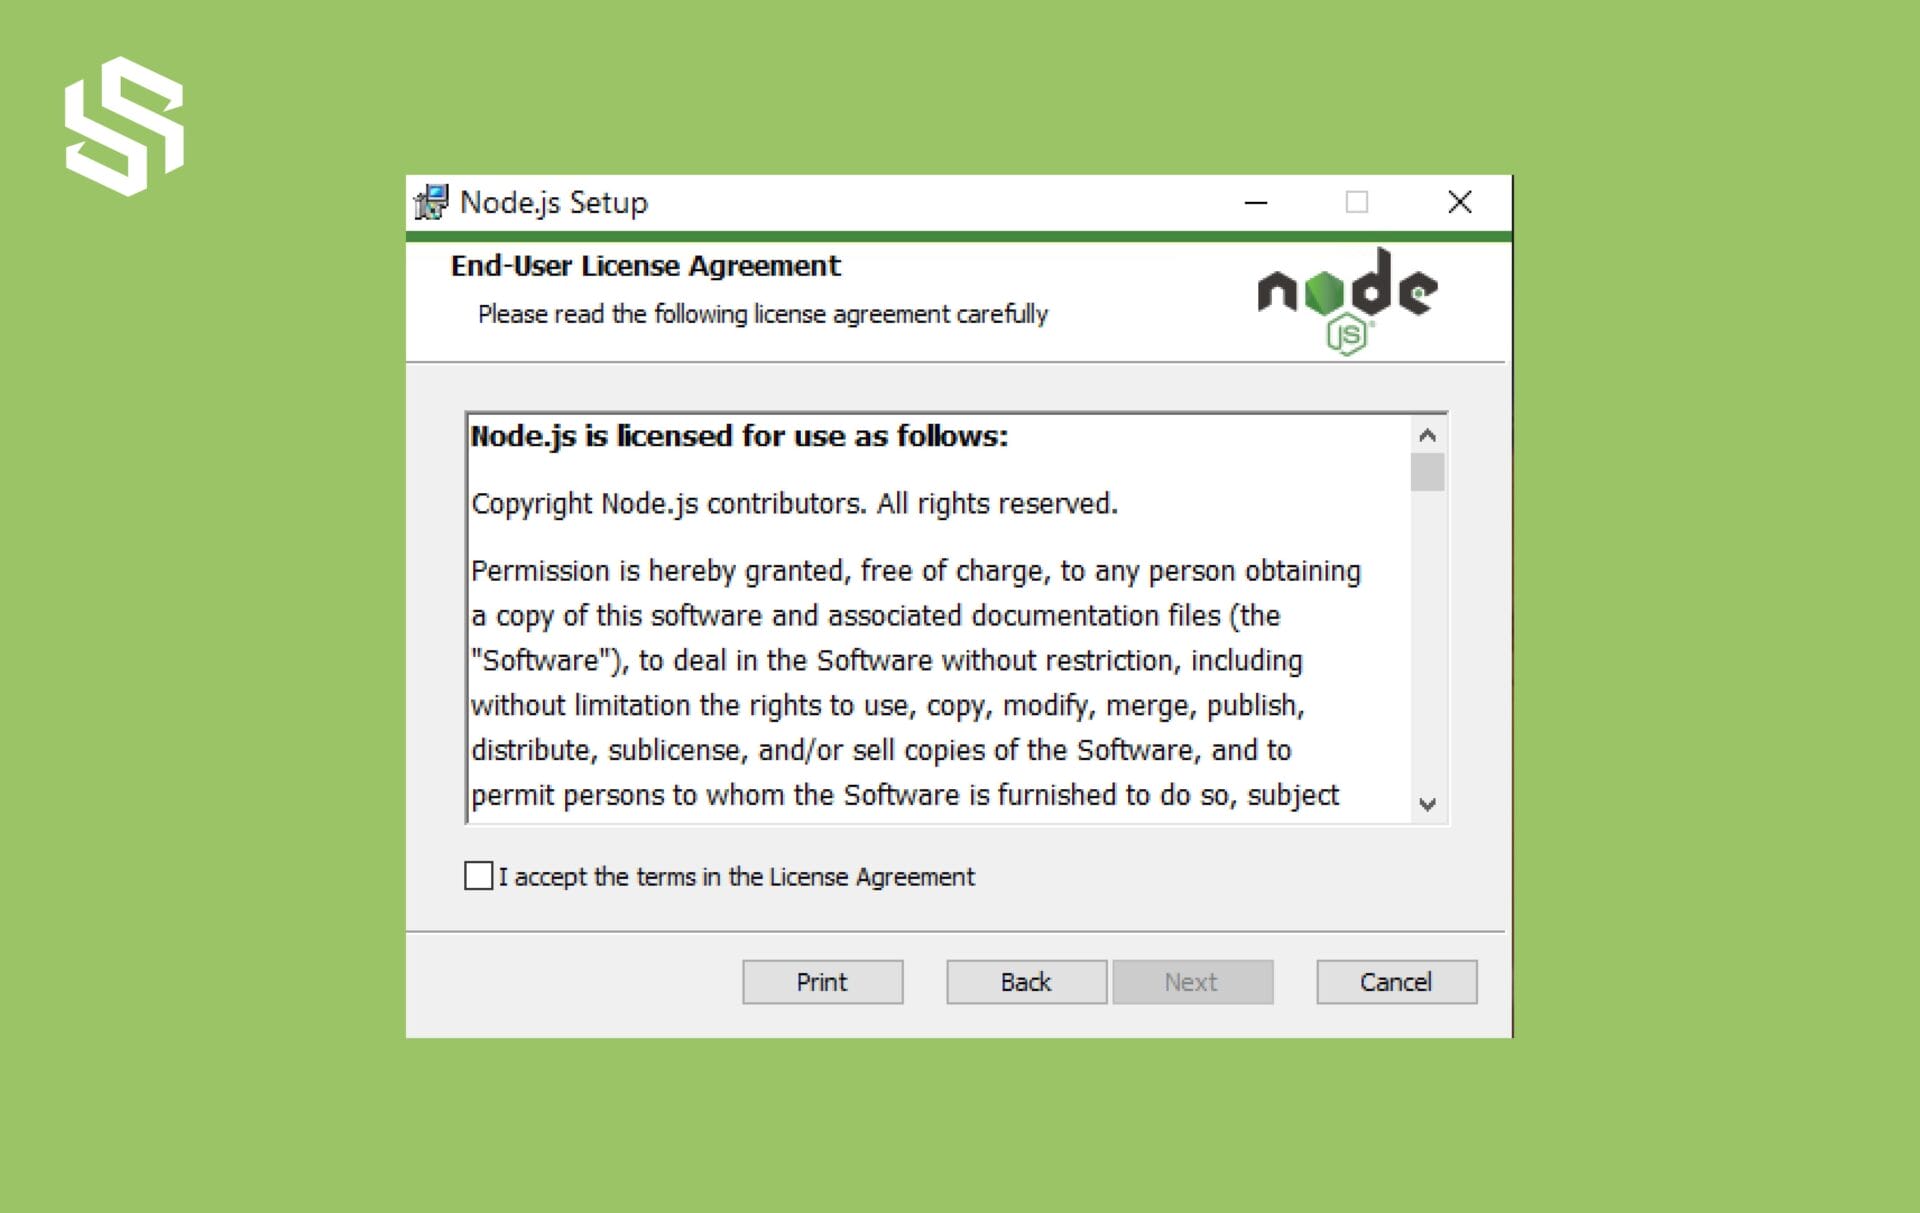 Node.js Agreement